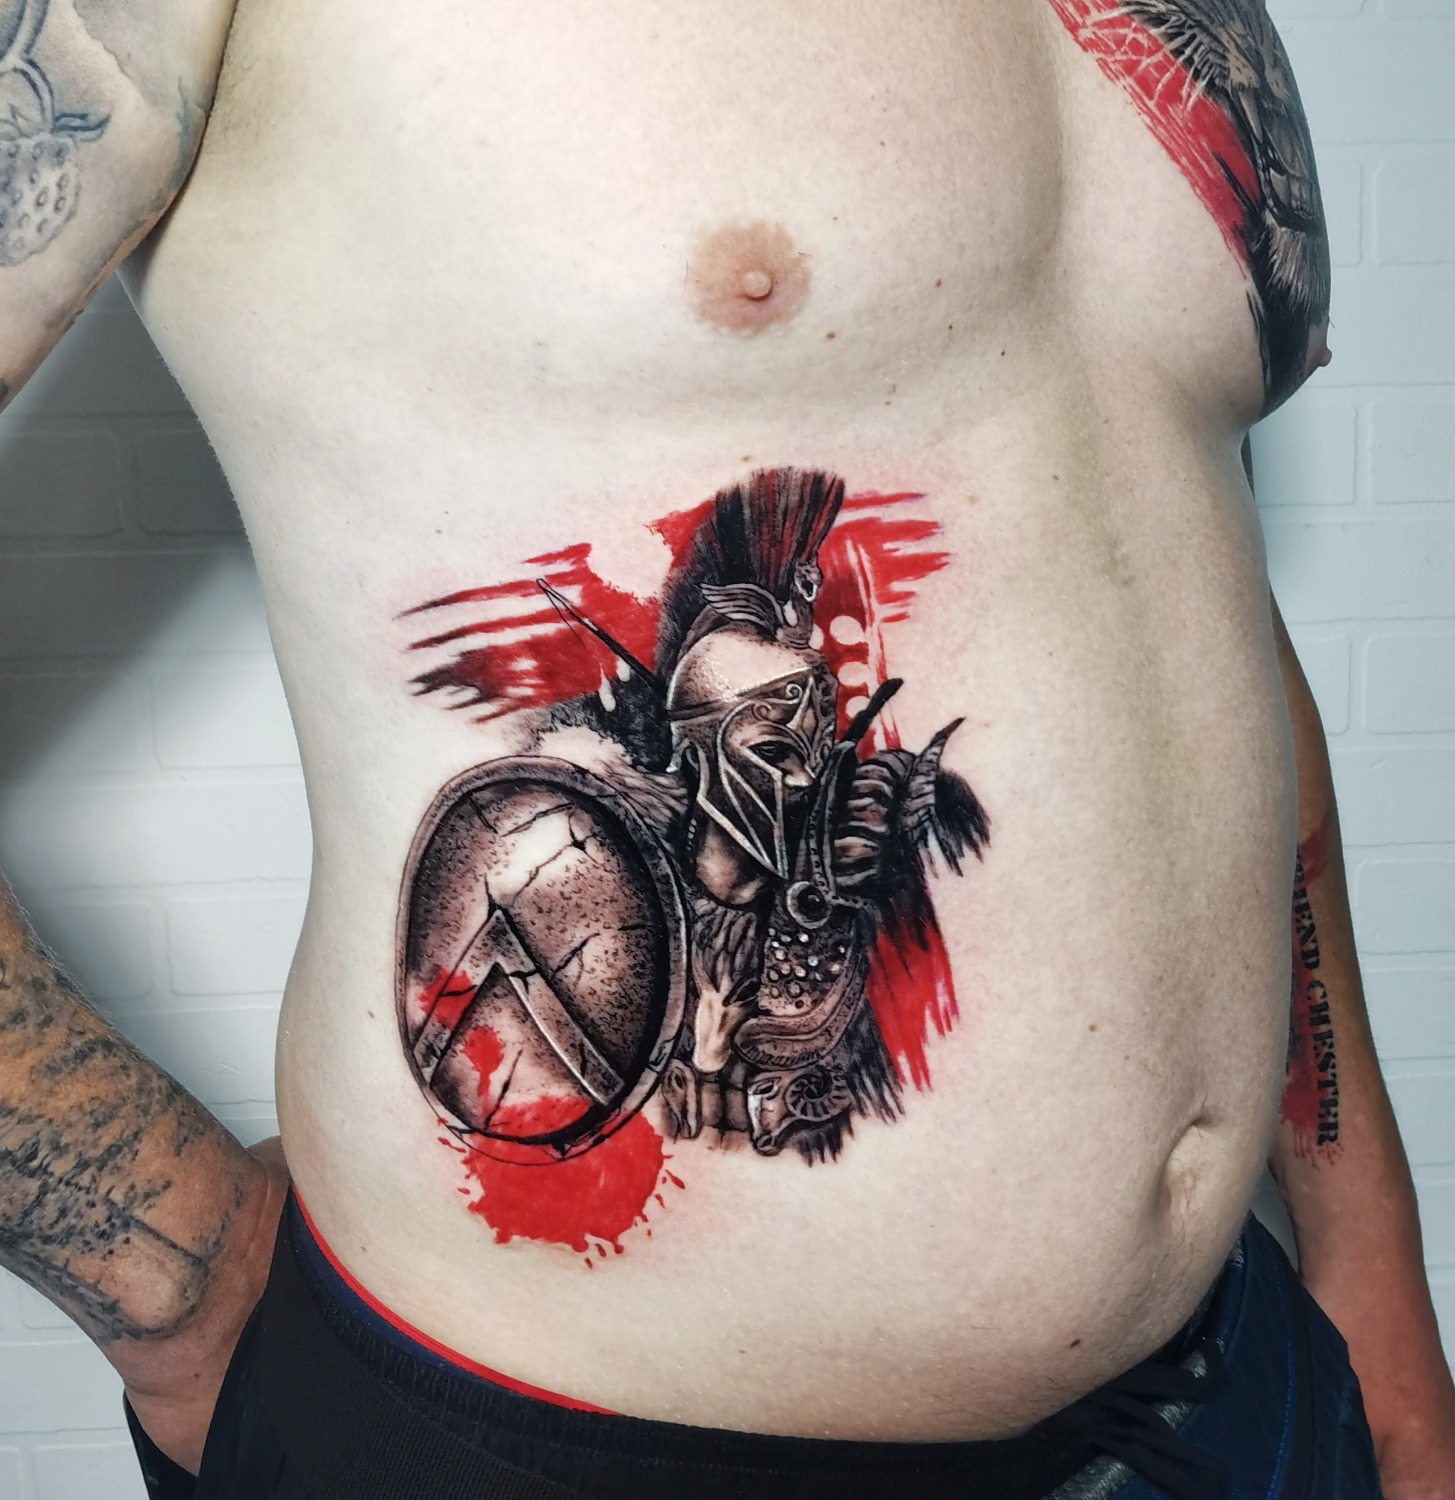 PrayerZero on Twitter my next tattoo idea lt3 A Winged Hussar tattoo  next ink Polish Wingedhussar tatt art httpstcoyeoVdeaBqT   Twitter